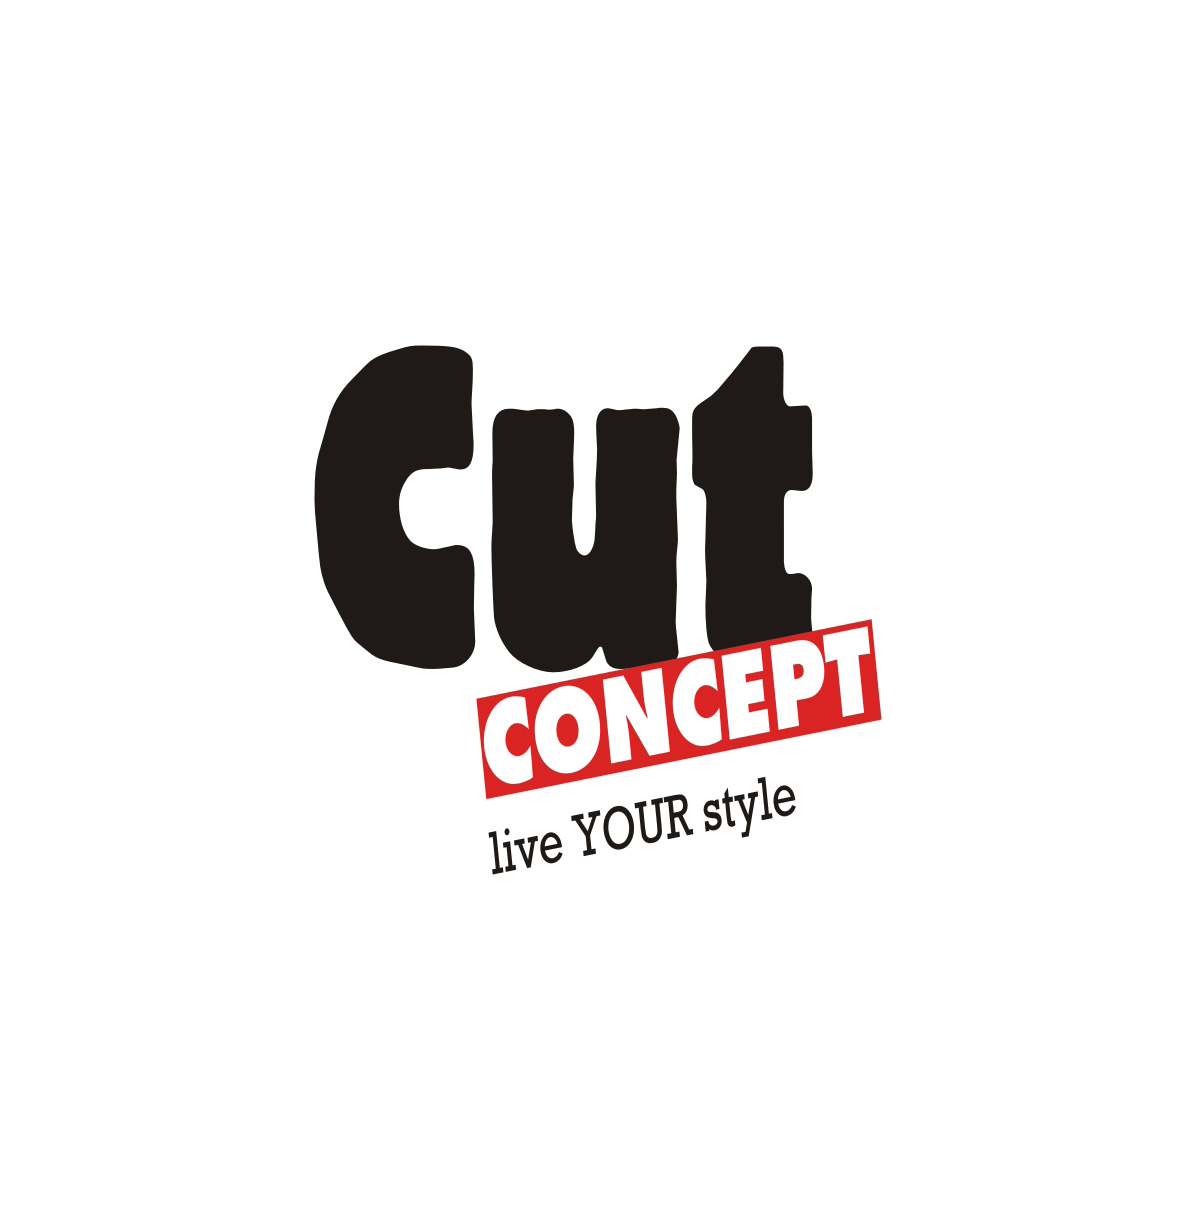 (c) Cut-concept.de